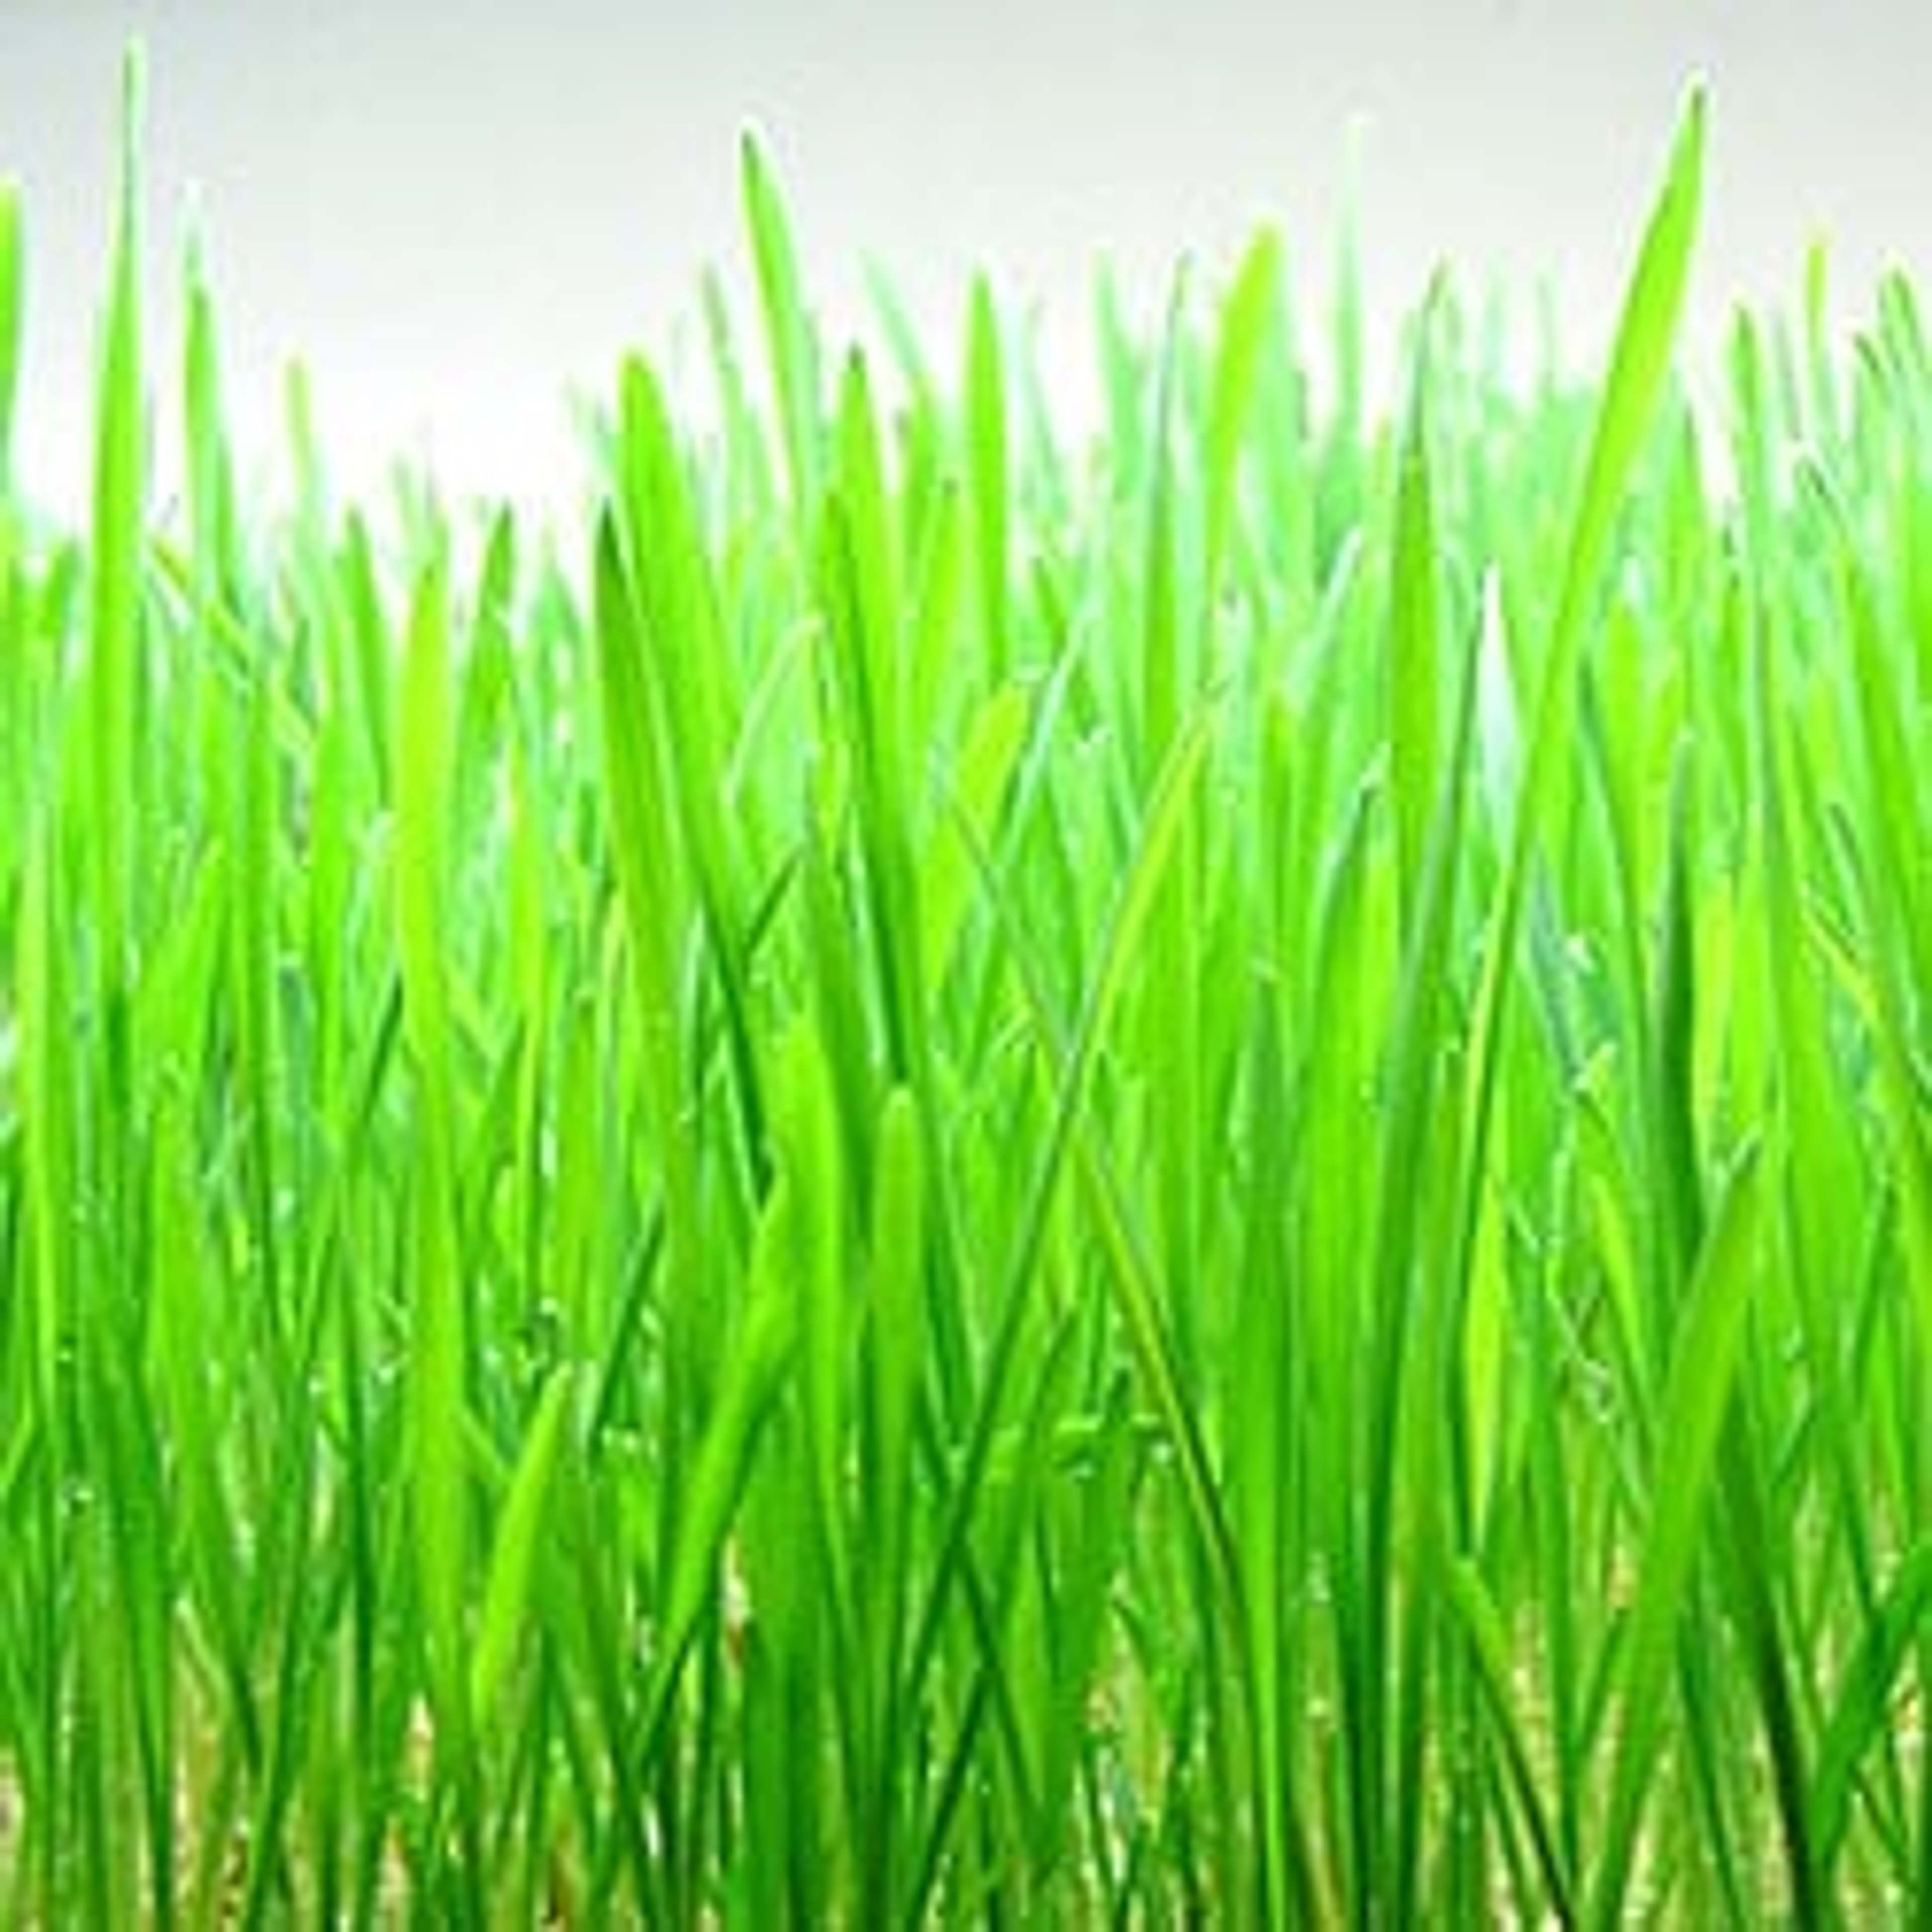 L’erba di grano rappresenta una fonte eccezionale di aminoacidi, clorofilla, vitamine e minerali e può contribuire al miglioramento della tua salute.